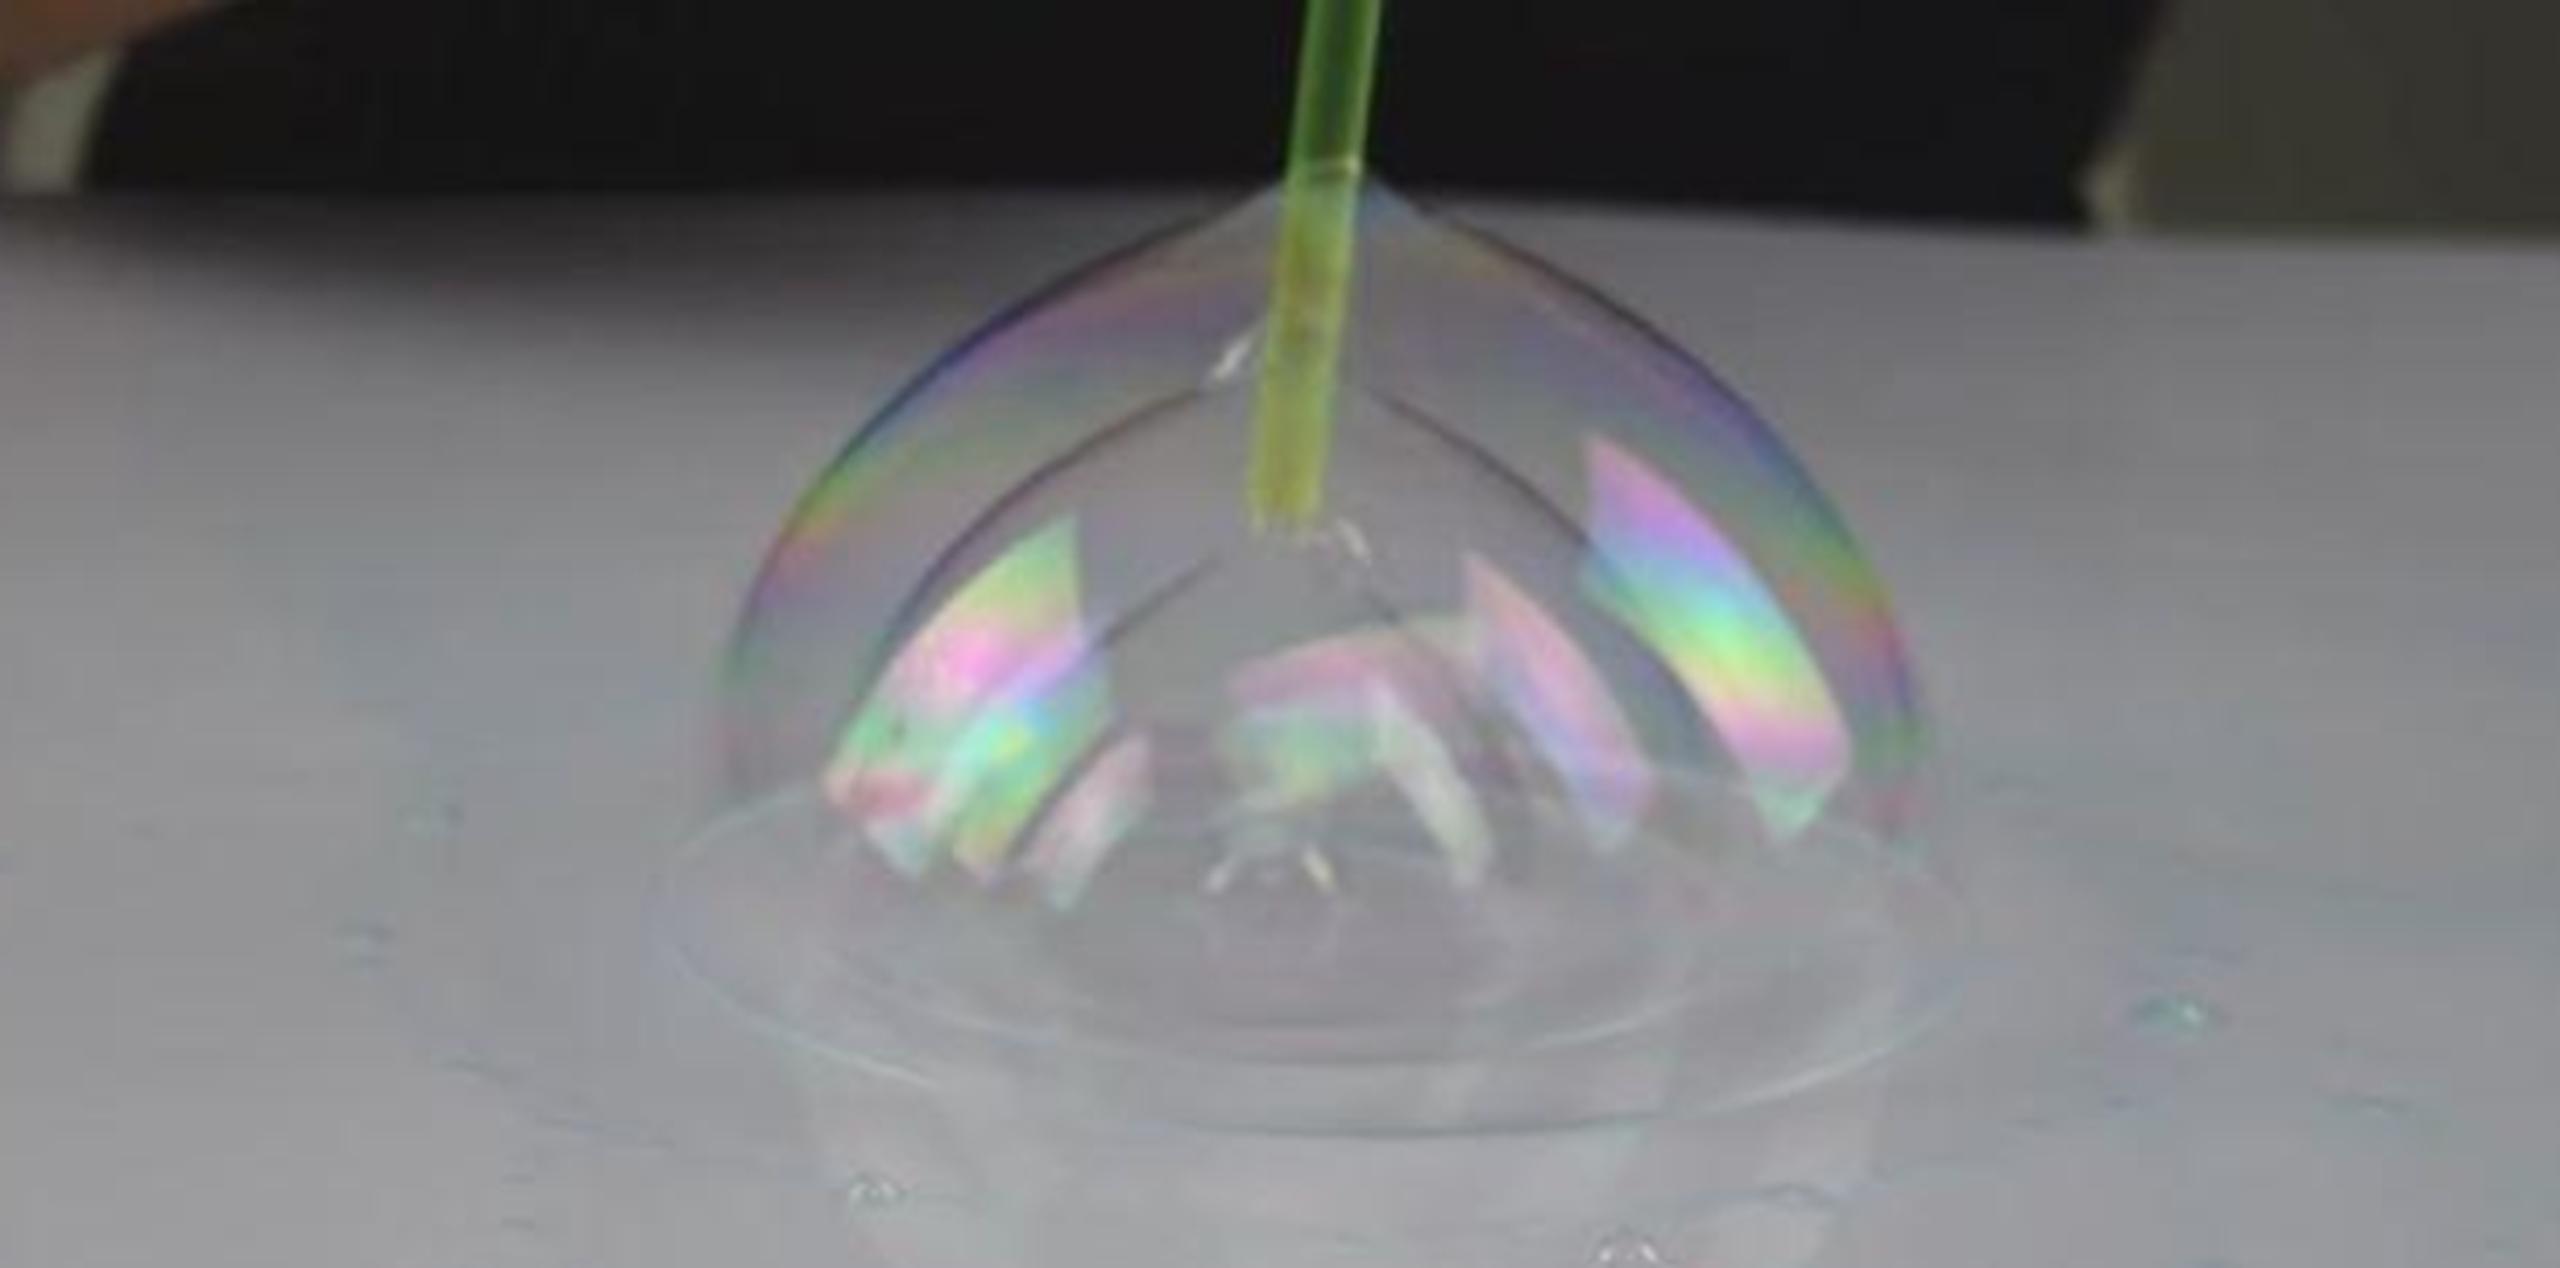 Vertiendo sobre una superficie plana una solución, se puede ingresar una pajilla al interior de una burbuja para que crezcan otras. (Captura / YouTube)